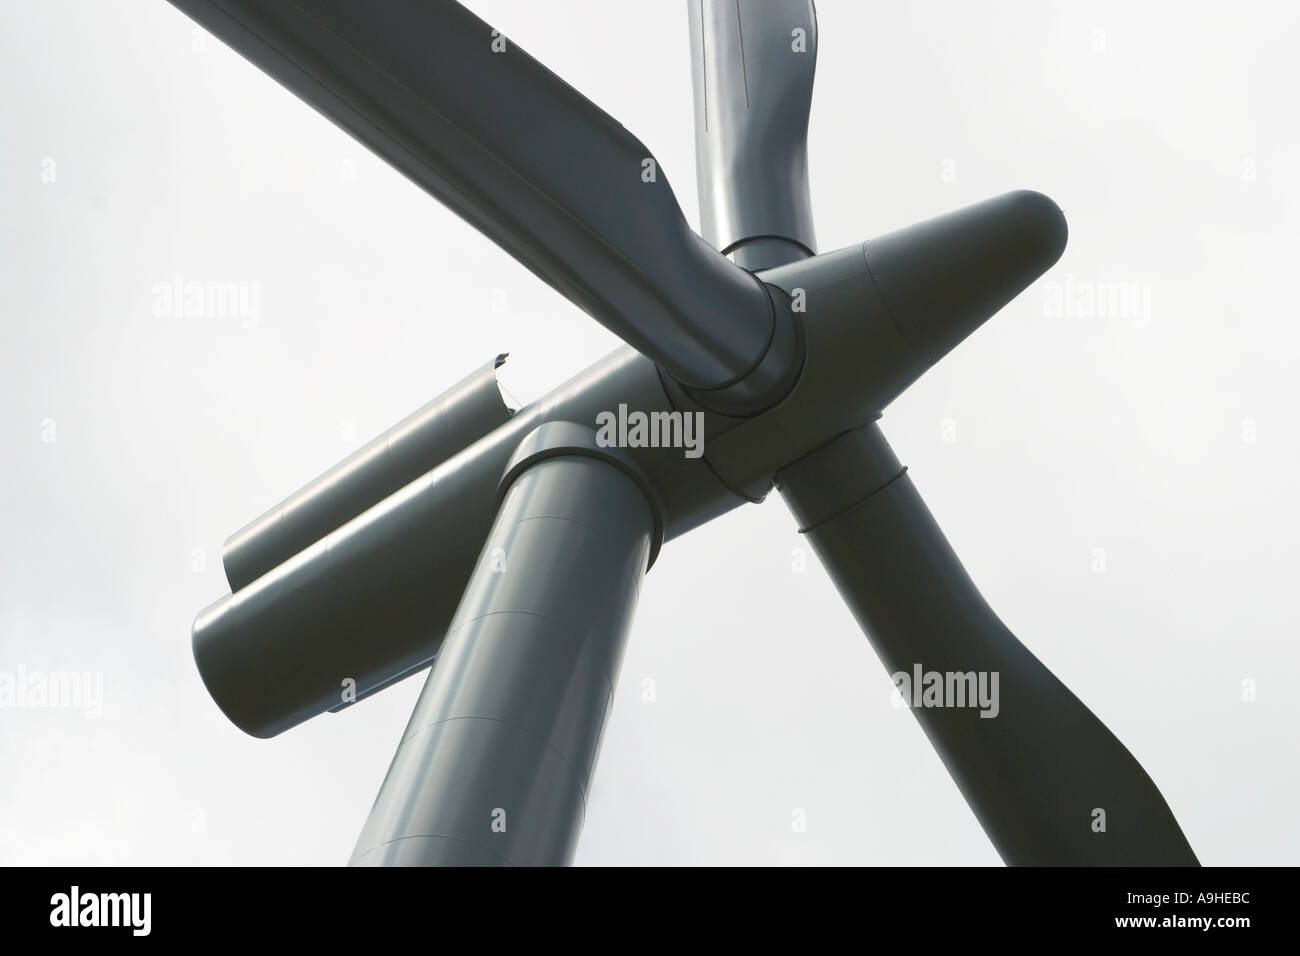 Der Blick auf die Suche nach wind turbine Blades und Turm, Maschinenhaus mit oben offenen während der Wartung. Wind Farm in Cumbria, England, Großbritannien Stockfoto